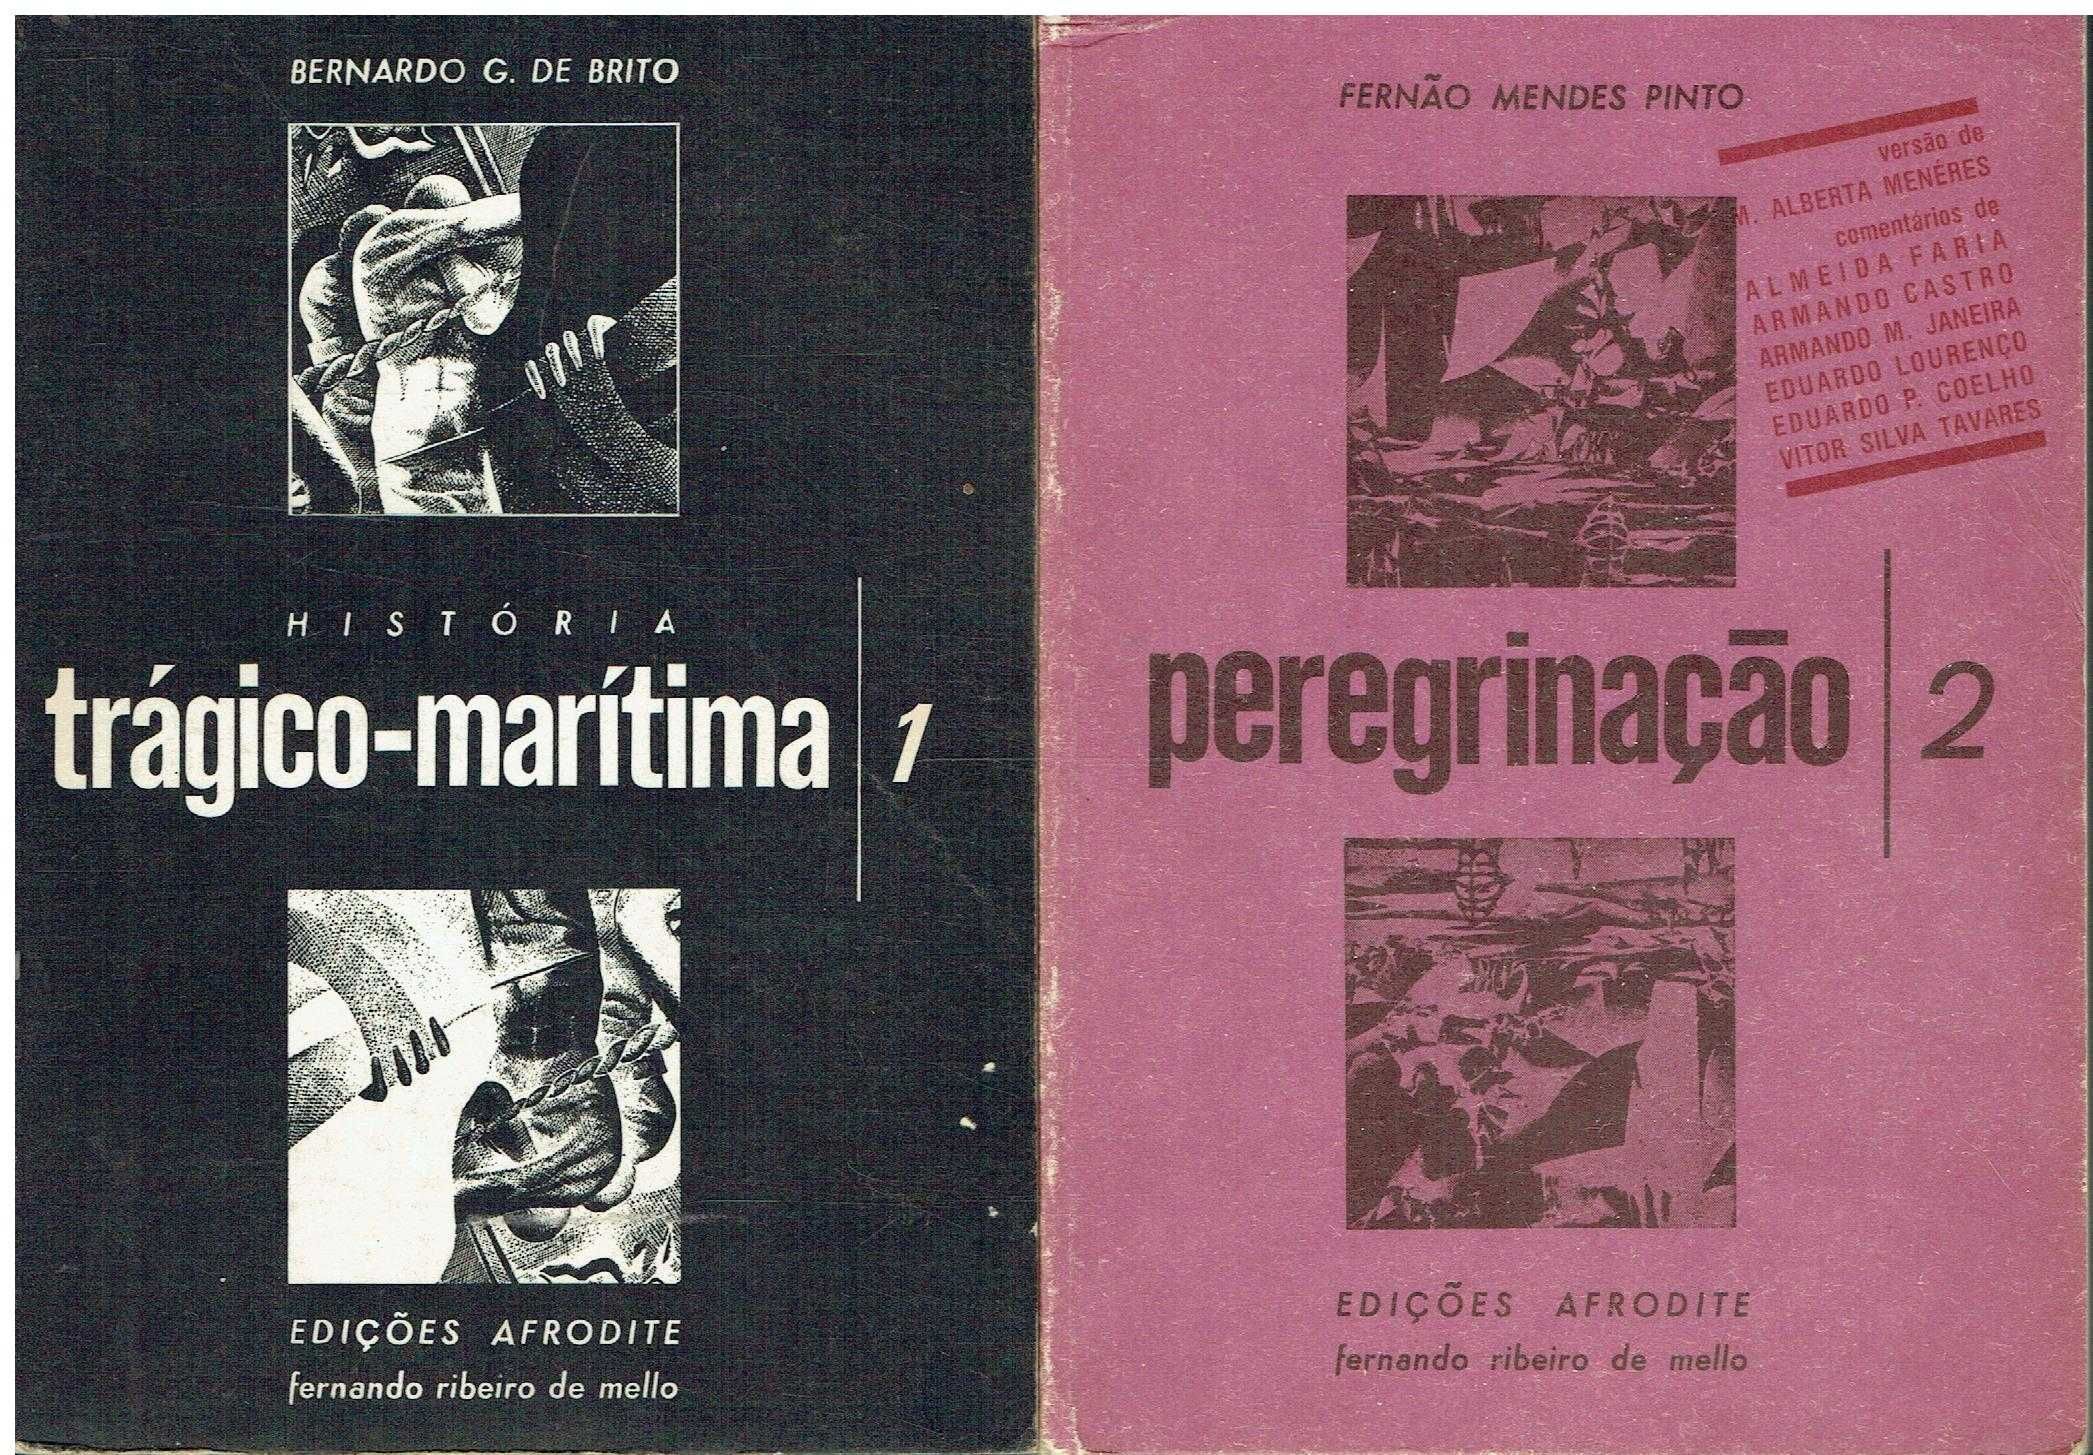 5292

Peregrinação / edição Afrodite - 2 Vols
de Fernão Mendes Pinto